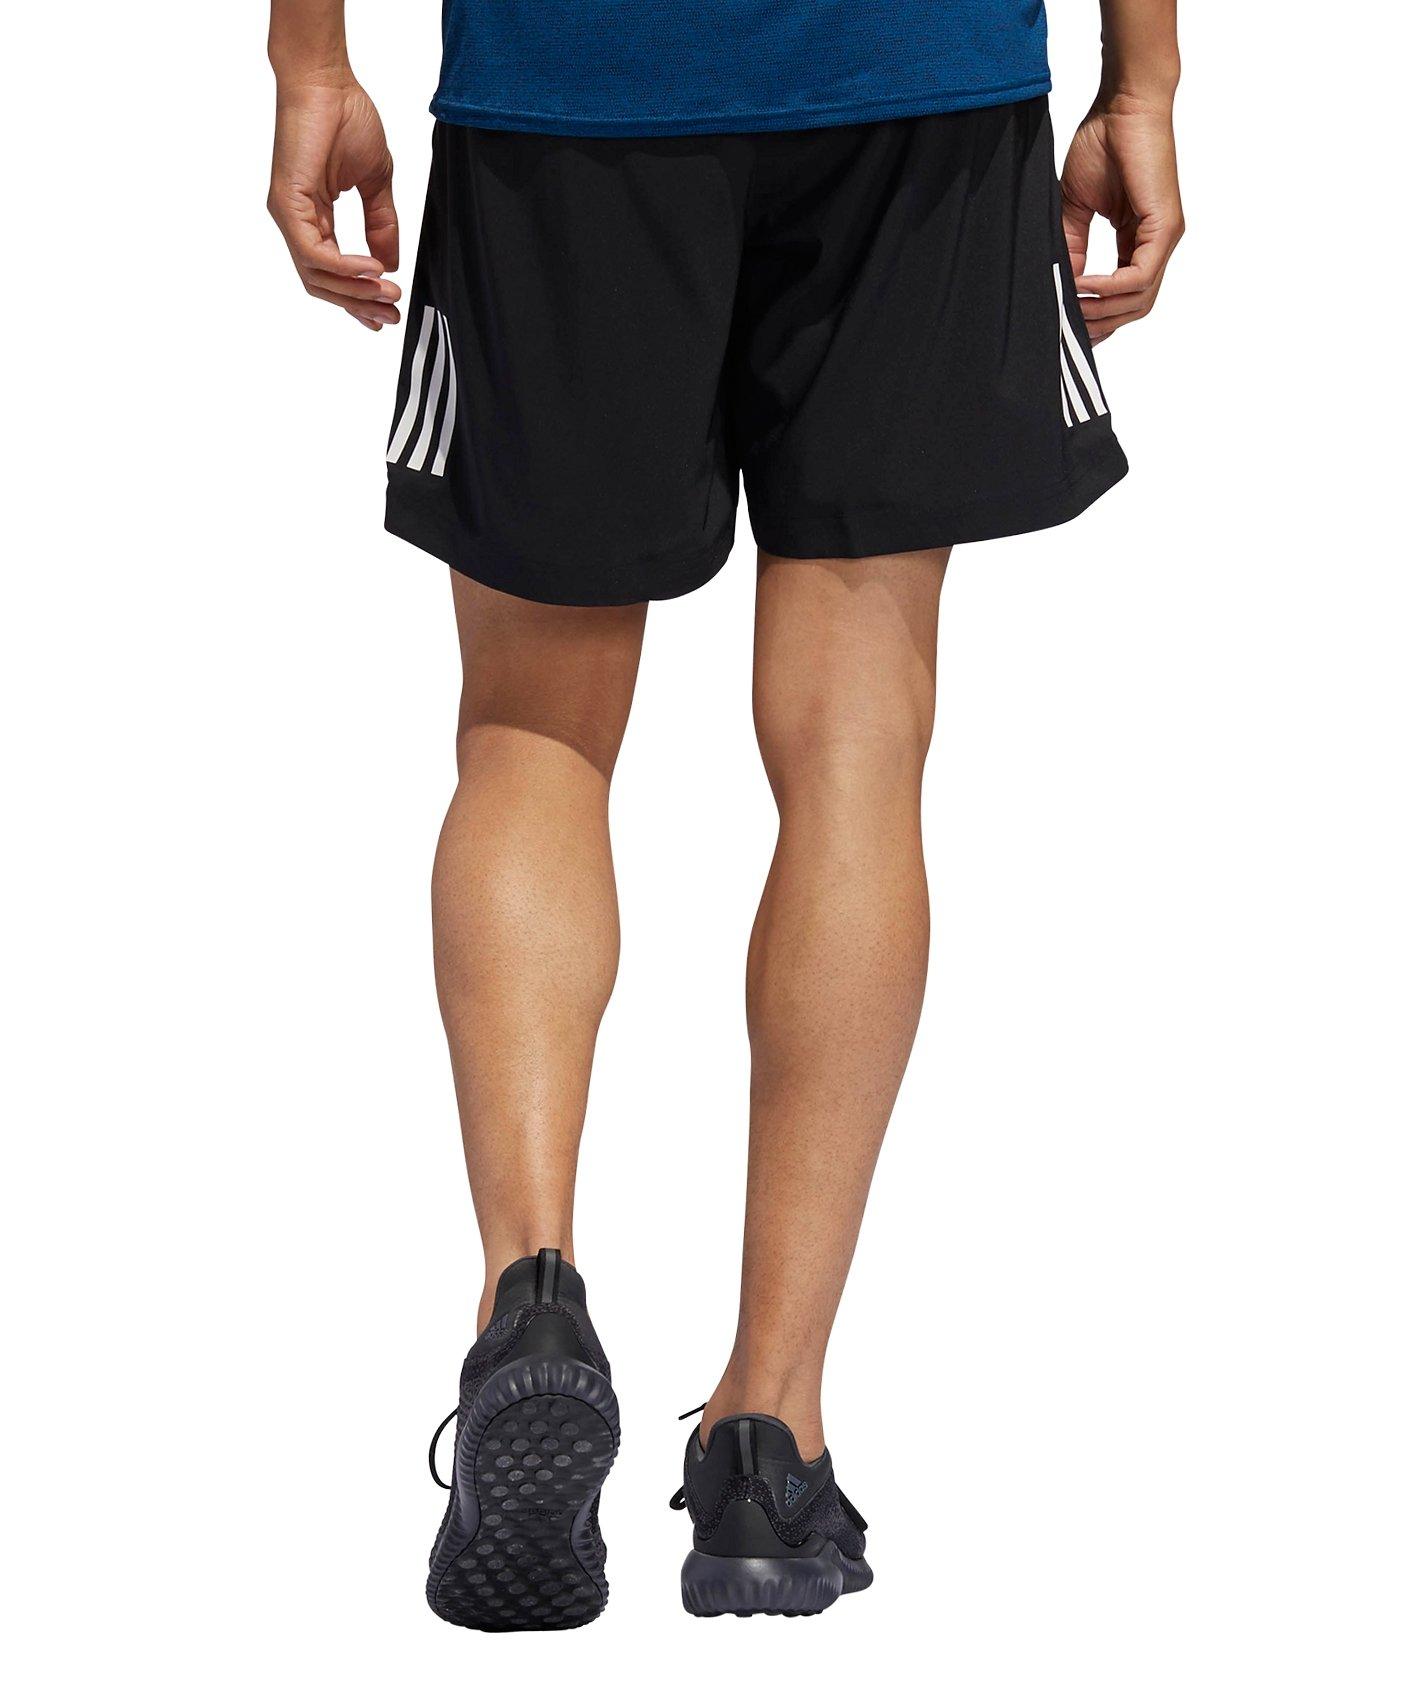 adidas own the run shorts 7